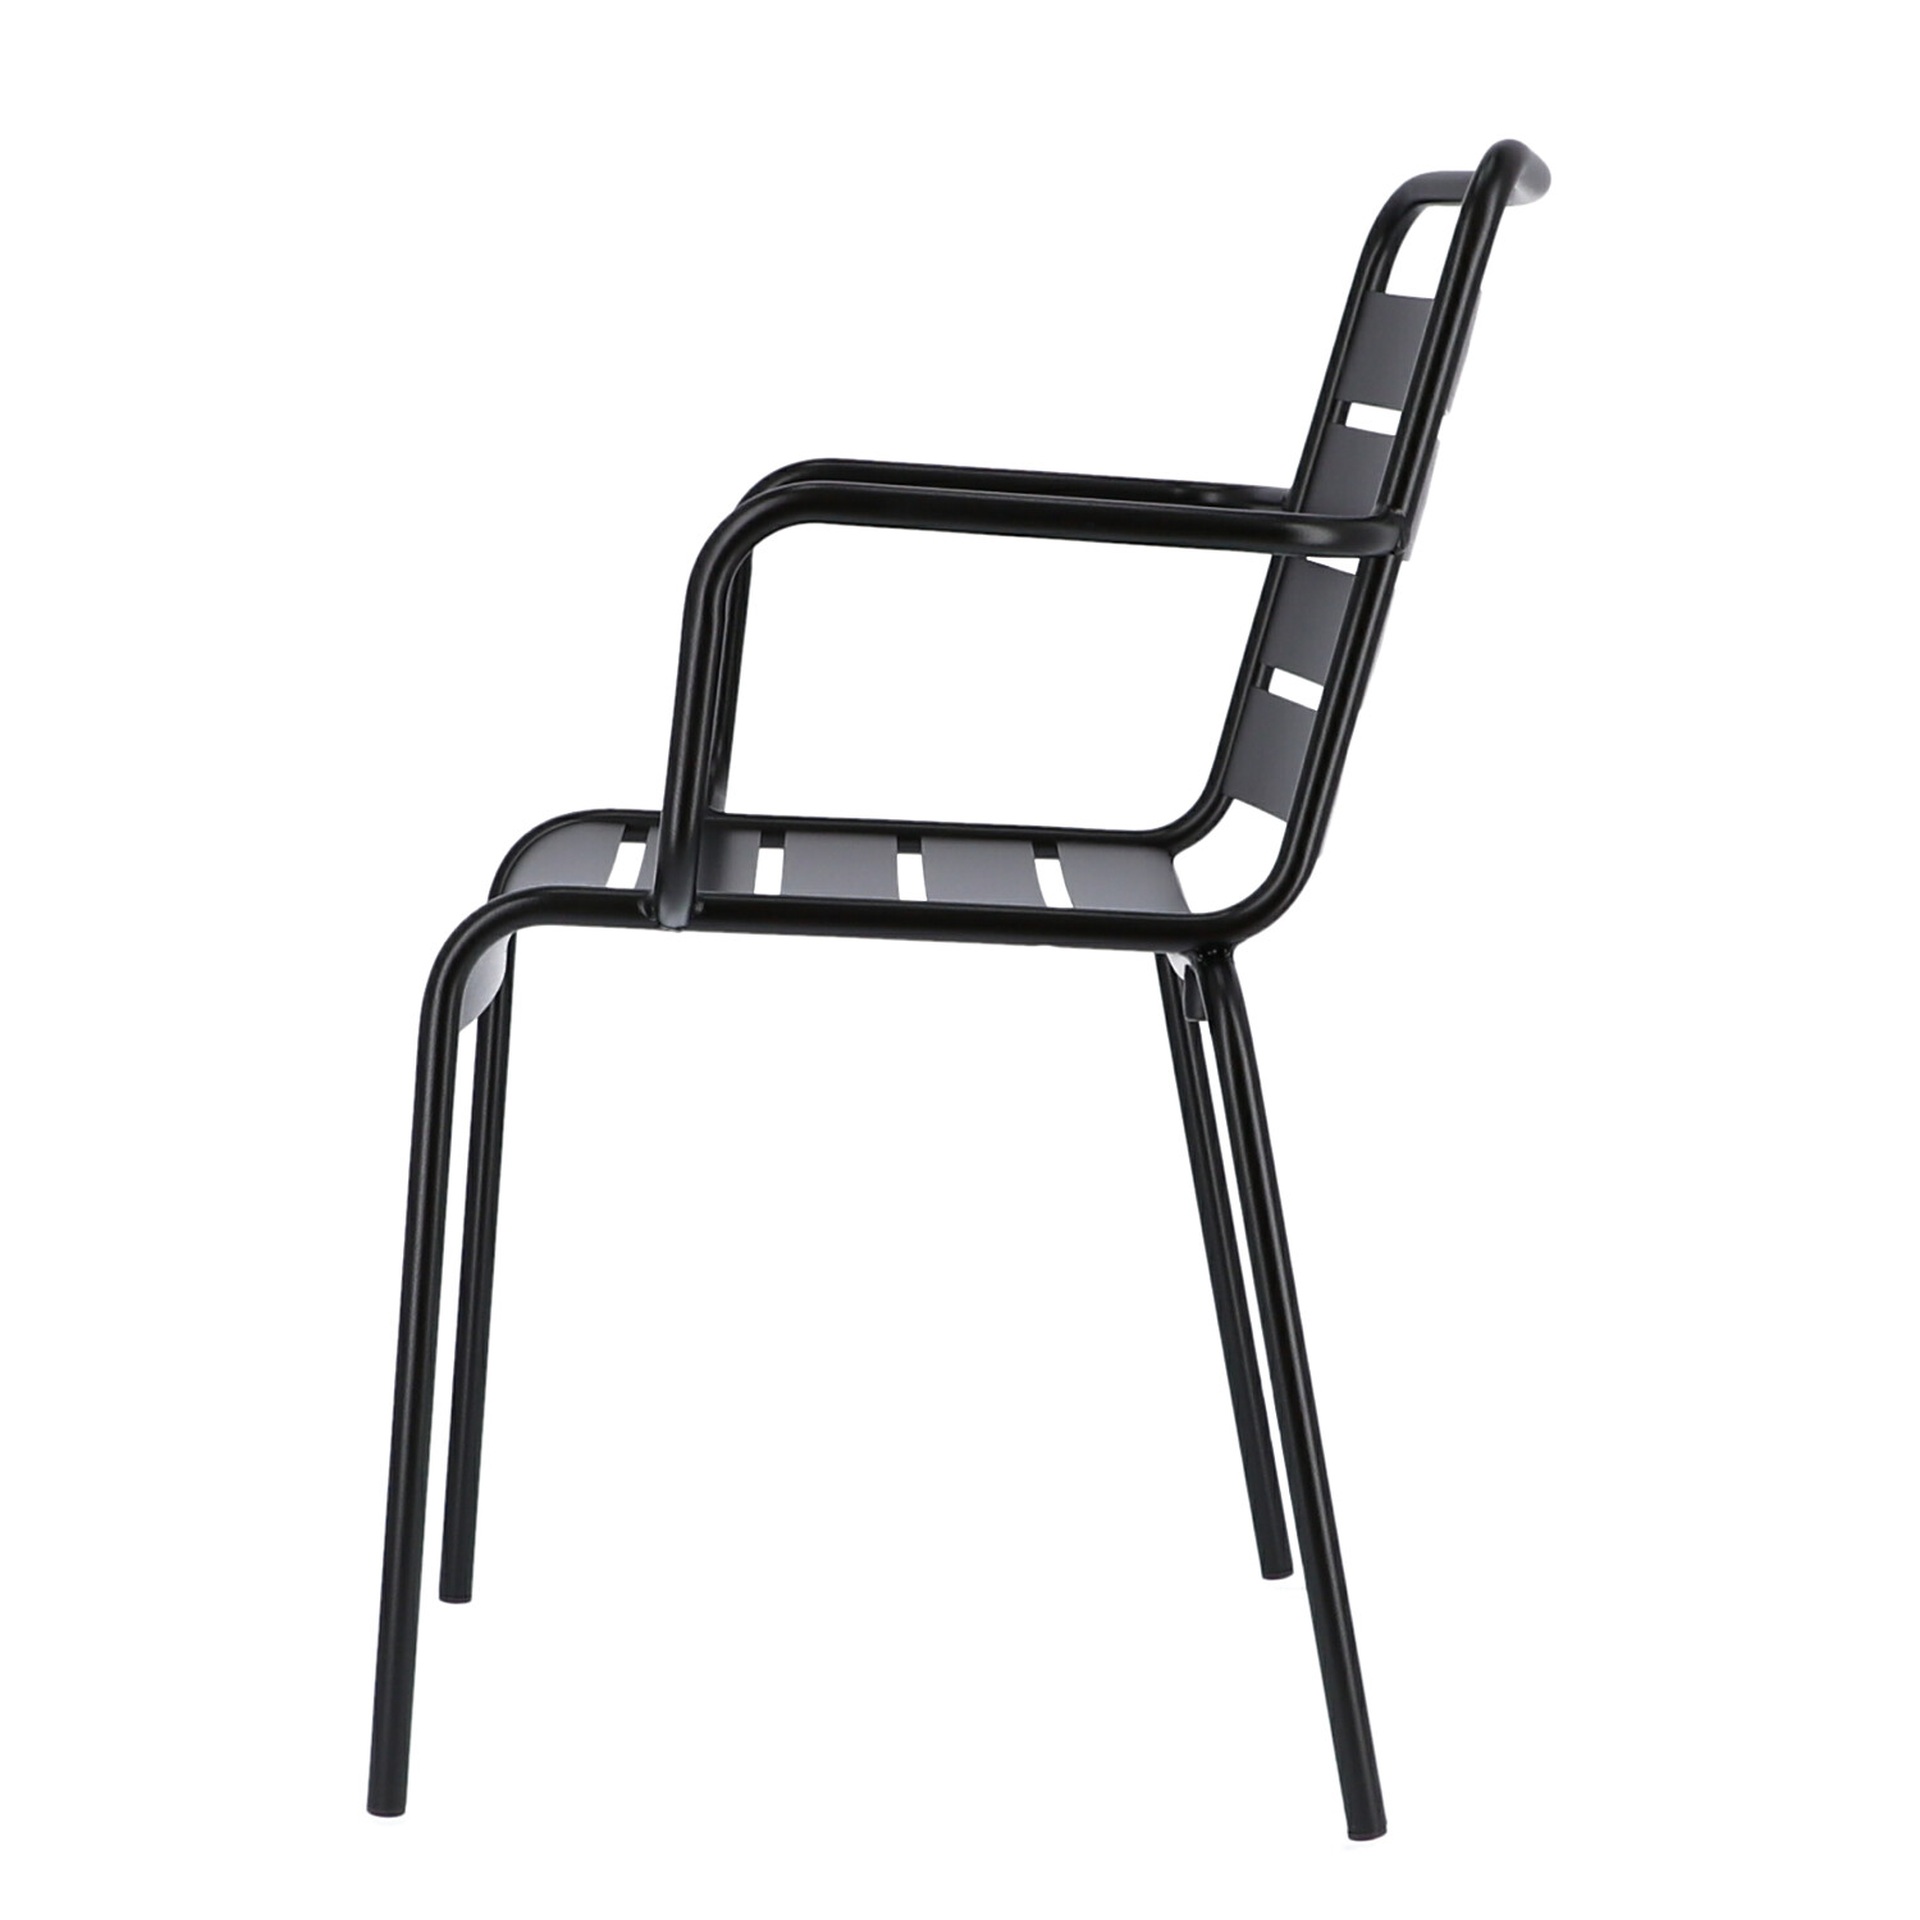 Der moderne Stapelsessel Mya wurde aus Aluminium gefertigt und hat einen schwarzen Farbton. Designet wurde der Sessel von der Marke Jan Kurtz.